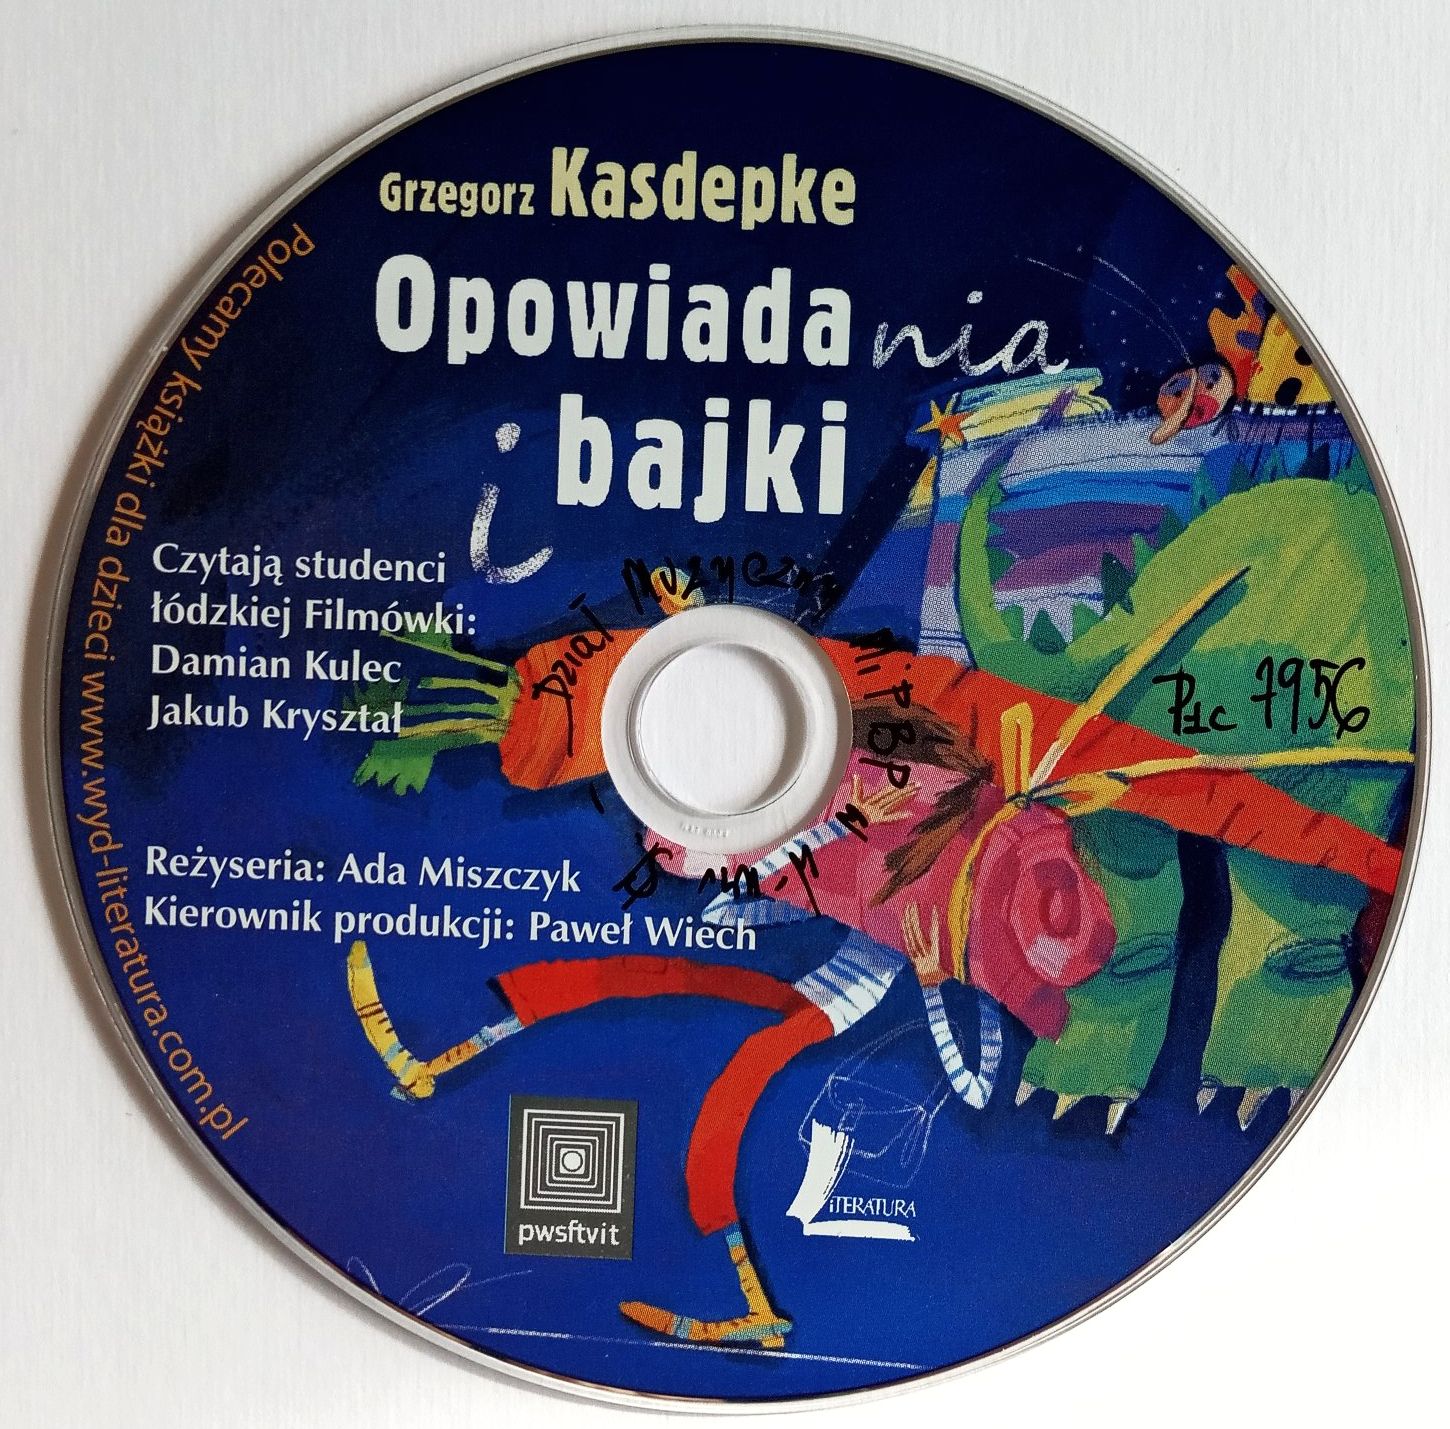 BAJKI - Opowiadania I Bajki (Grzegorz Kasdepke)